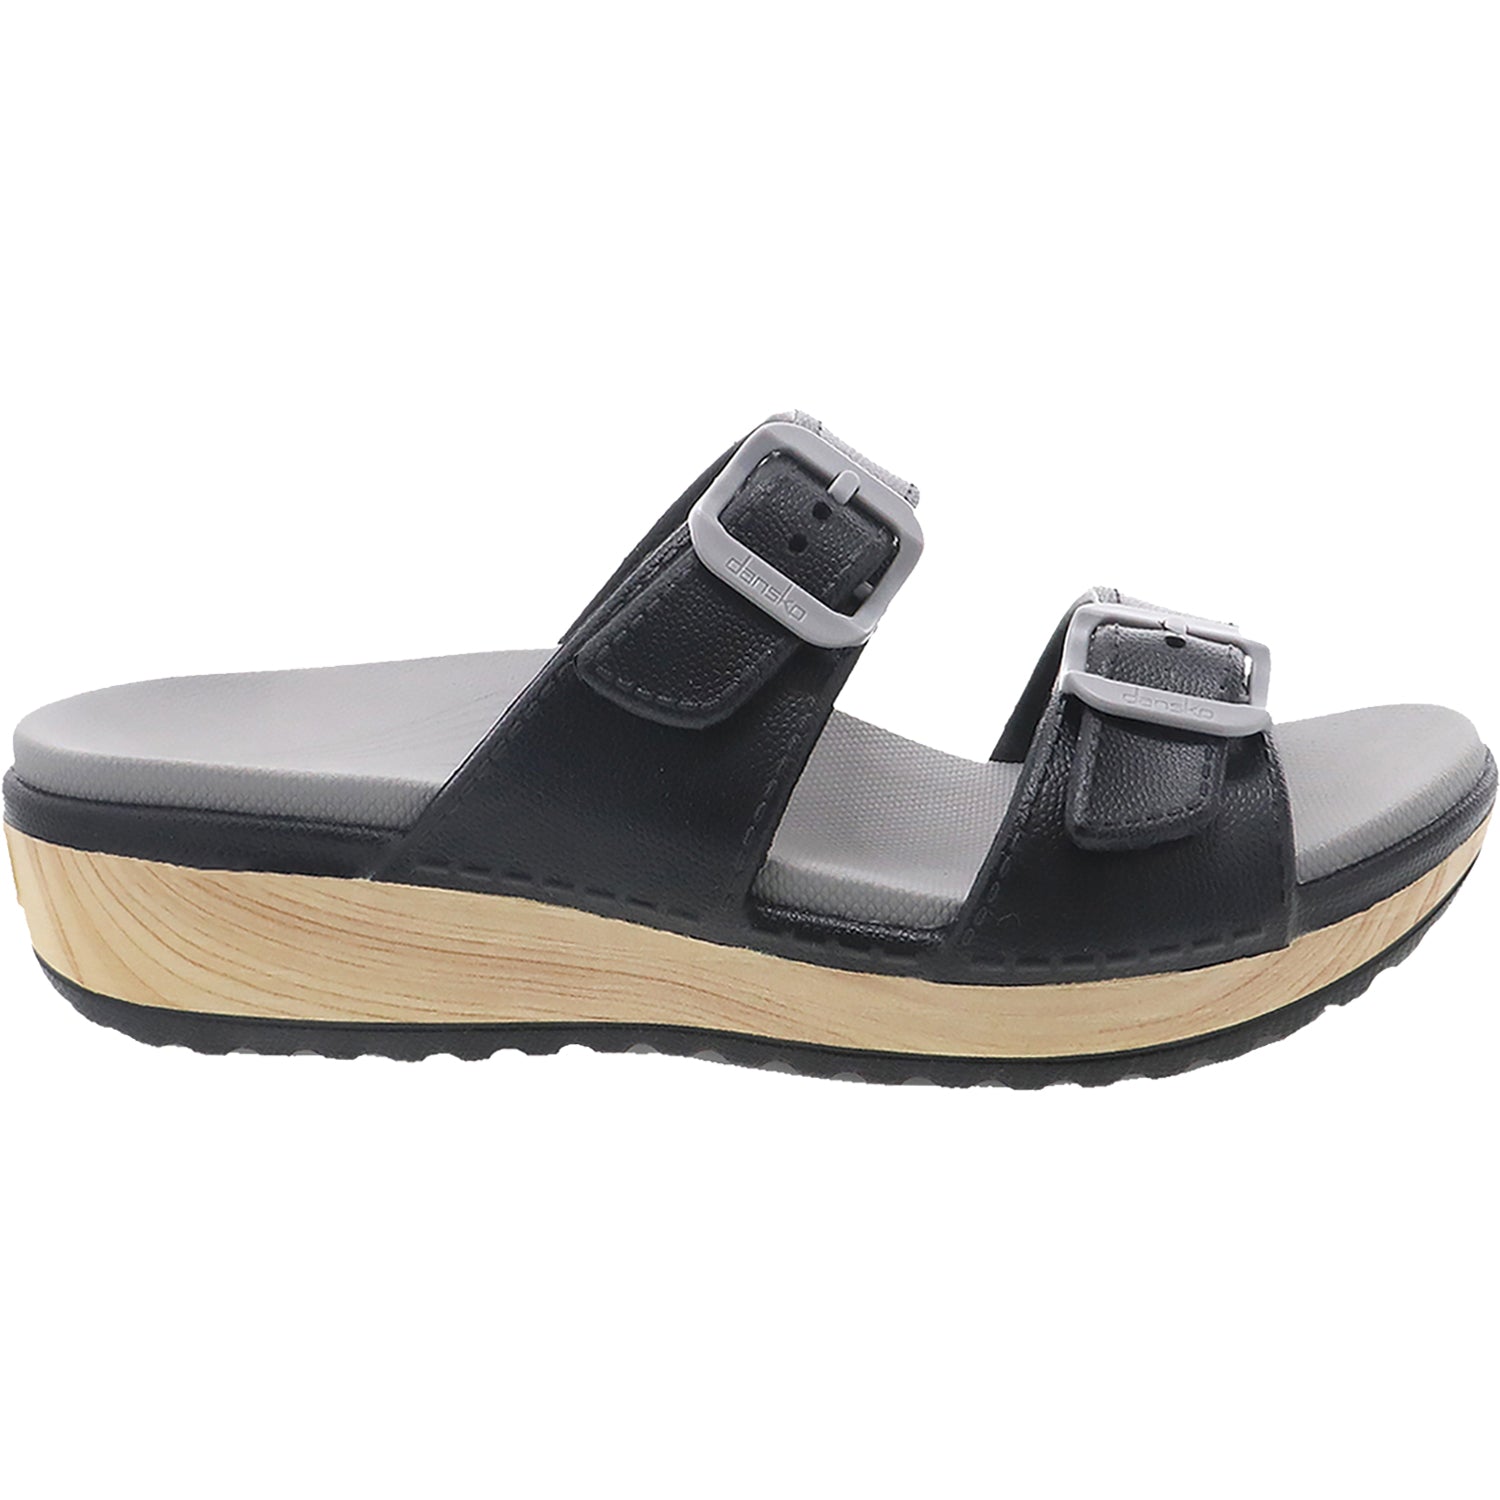 Dansko Kandi | Women's Slide Sandals | Footwear etc.